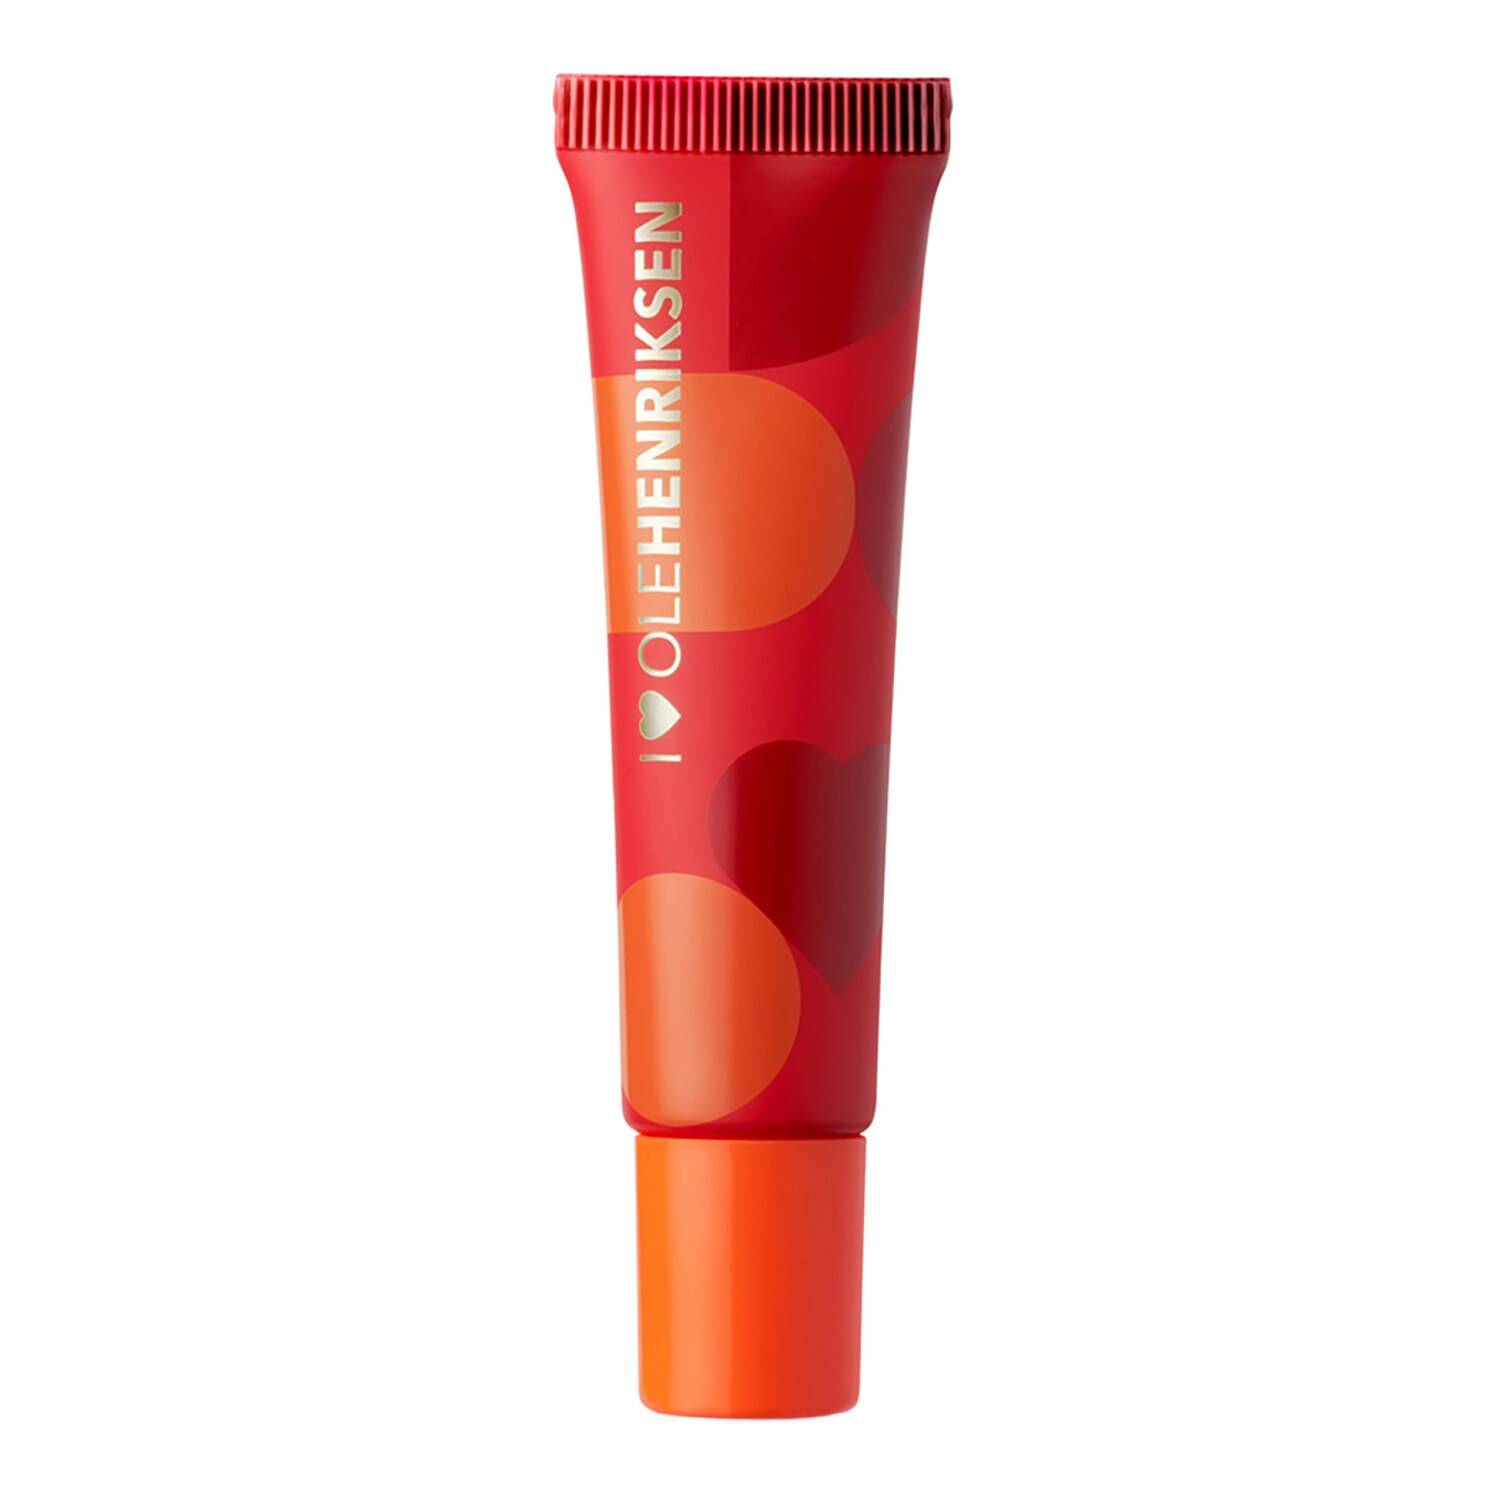 Olehenriksen Pout Preserve Lip Treatment 12Ml Blood Orange Spritz